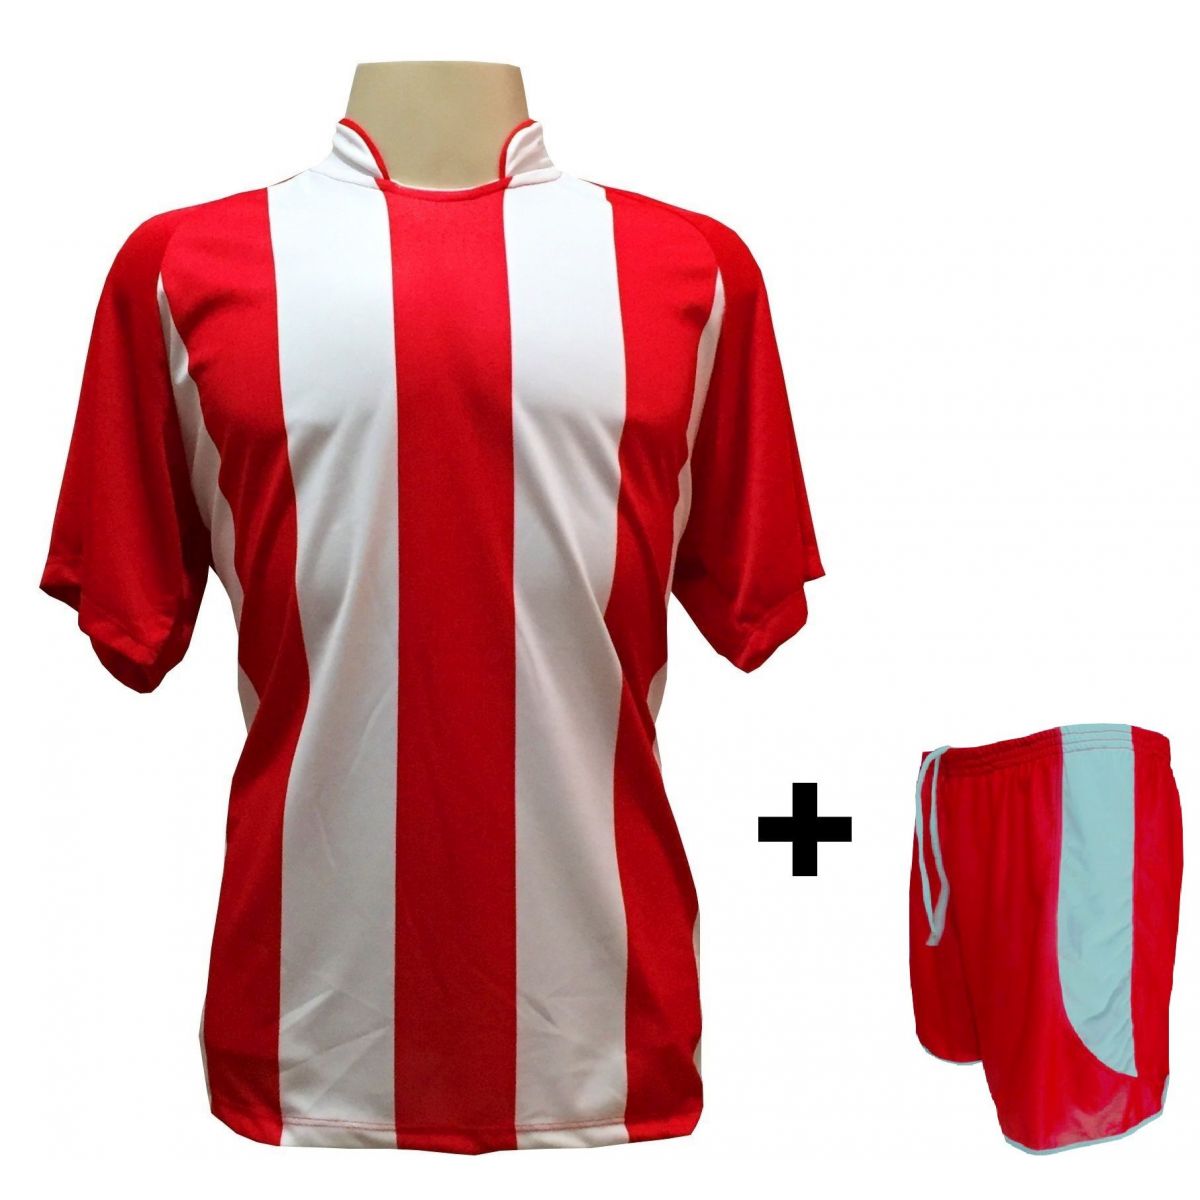 Uniforme Esportivo com 18 camisas modelo Milan Vermelho/Branco + 18 calções modelo Copa Vermelho/Branco + Brindes